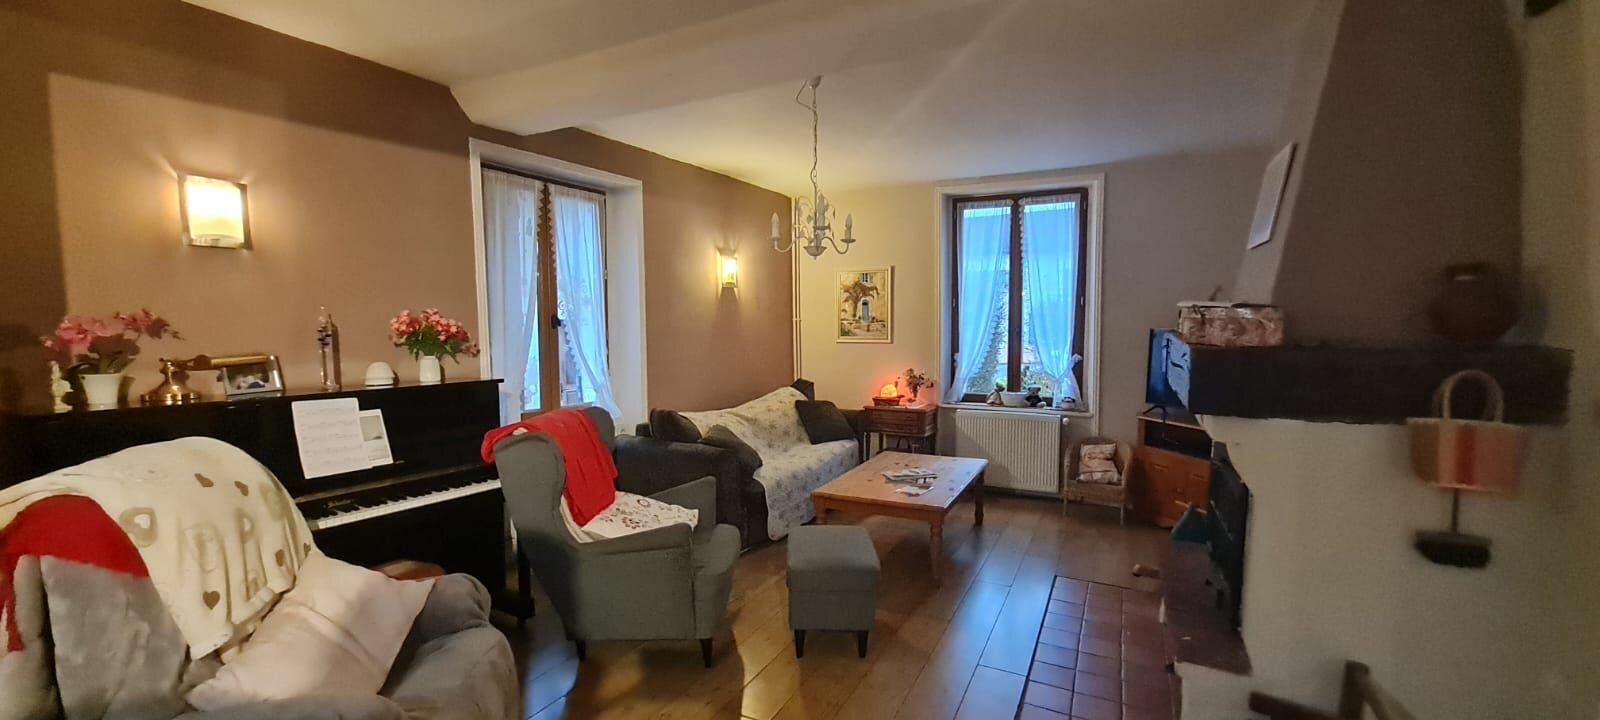 Maison à vendre 4 160m2 à Saâcy-sur-Marne vignette-7